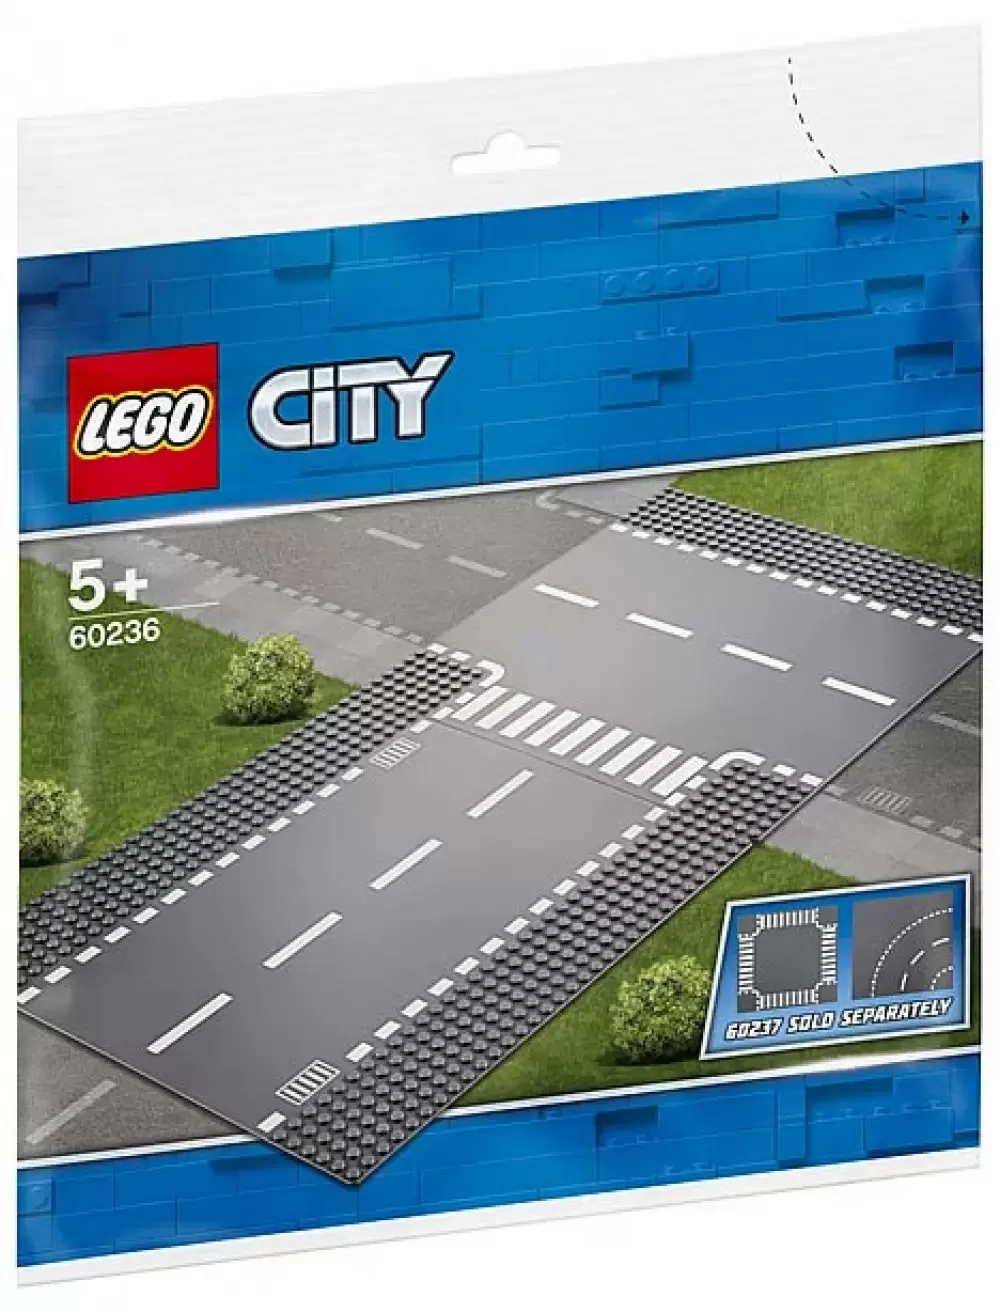 LEGO CITY - Droite et intersection